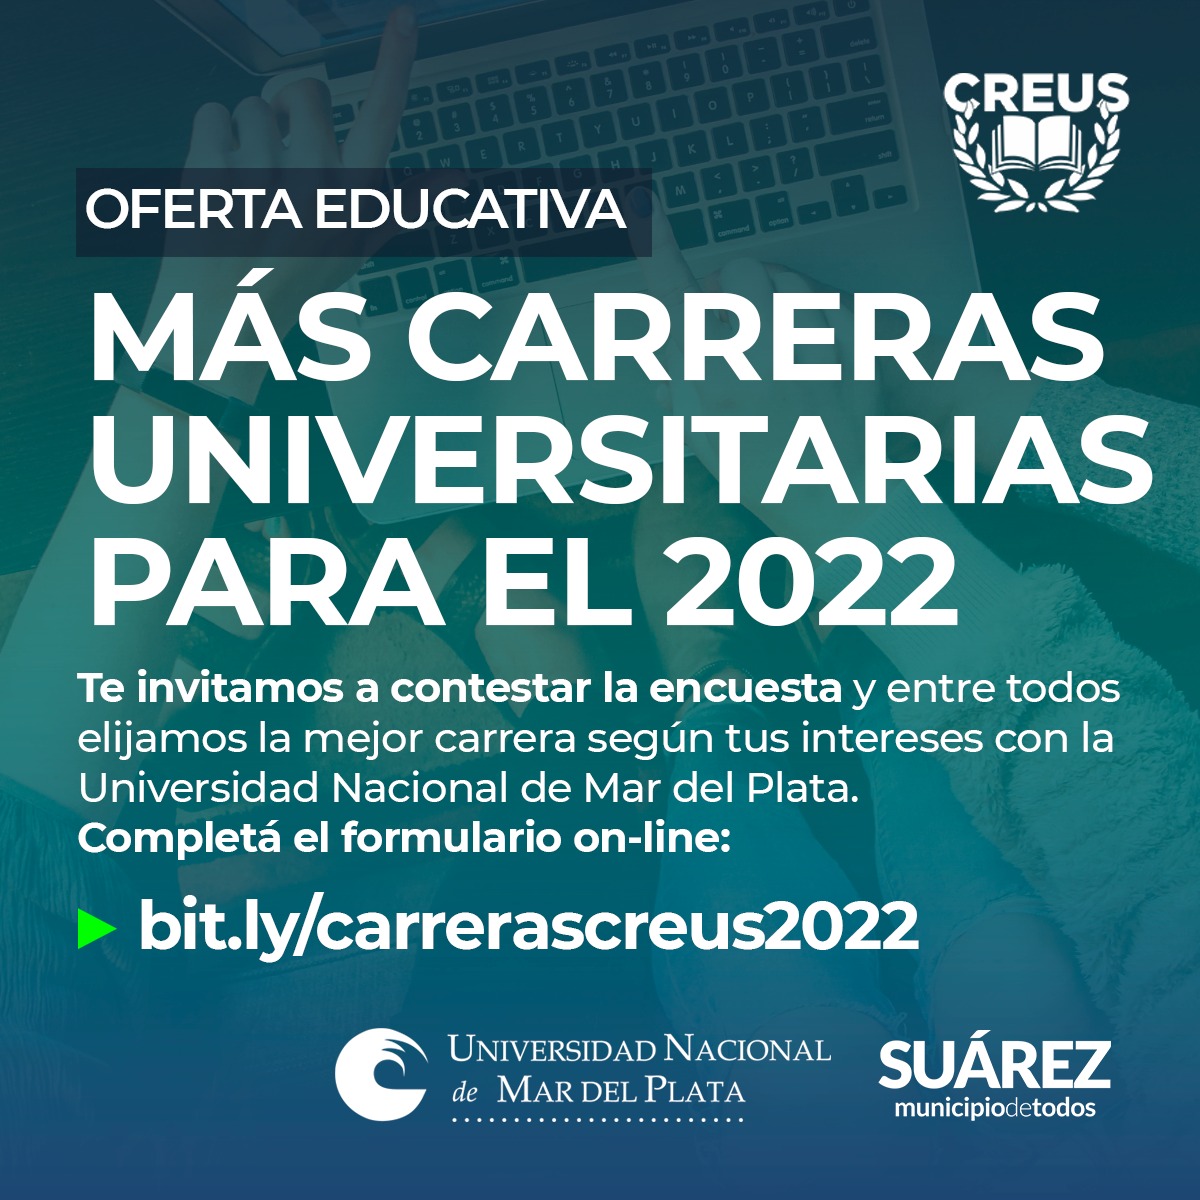 CREUS: SUMAMOS MÁS CARRERAS UNIVERSITARIAS PARA EL AÑO 2022